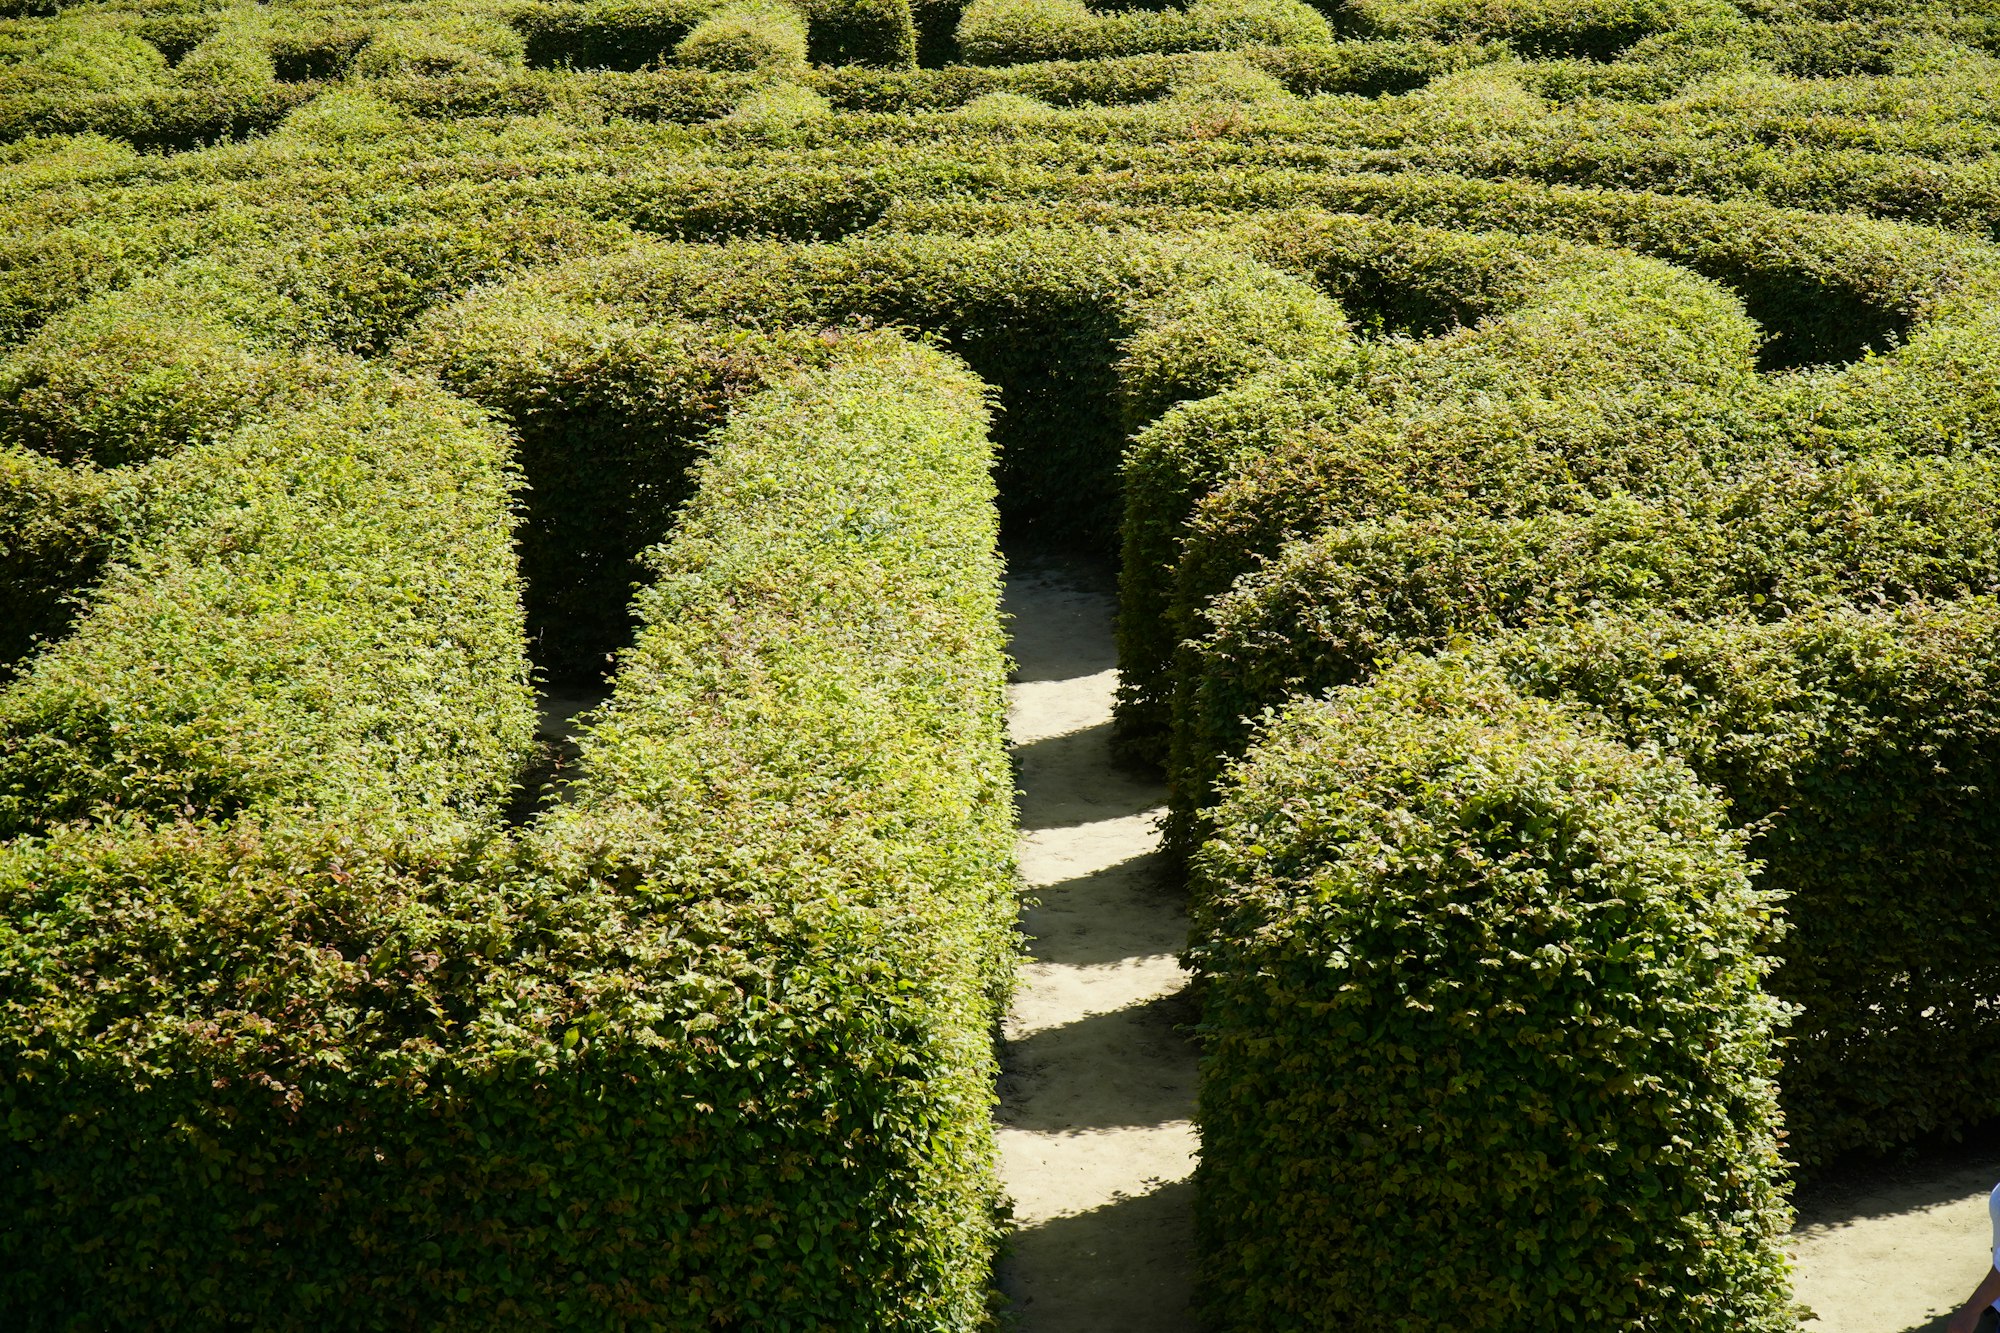 A natural shrub maze